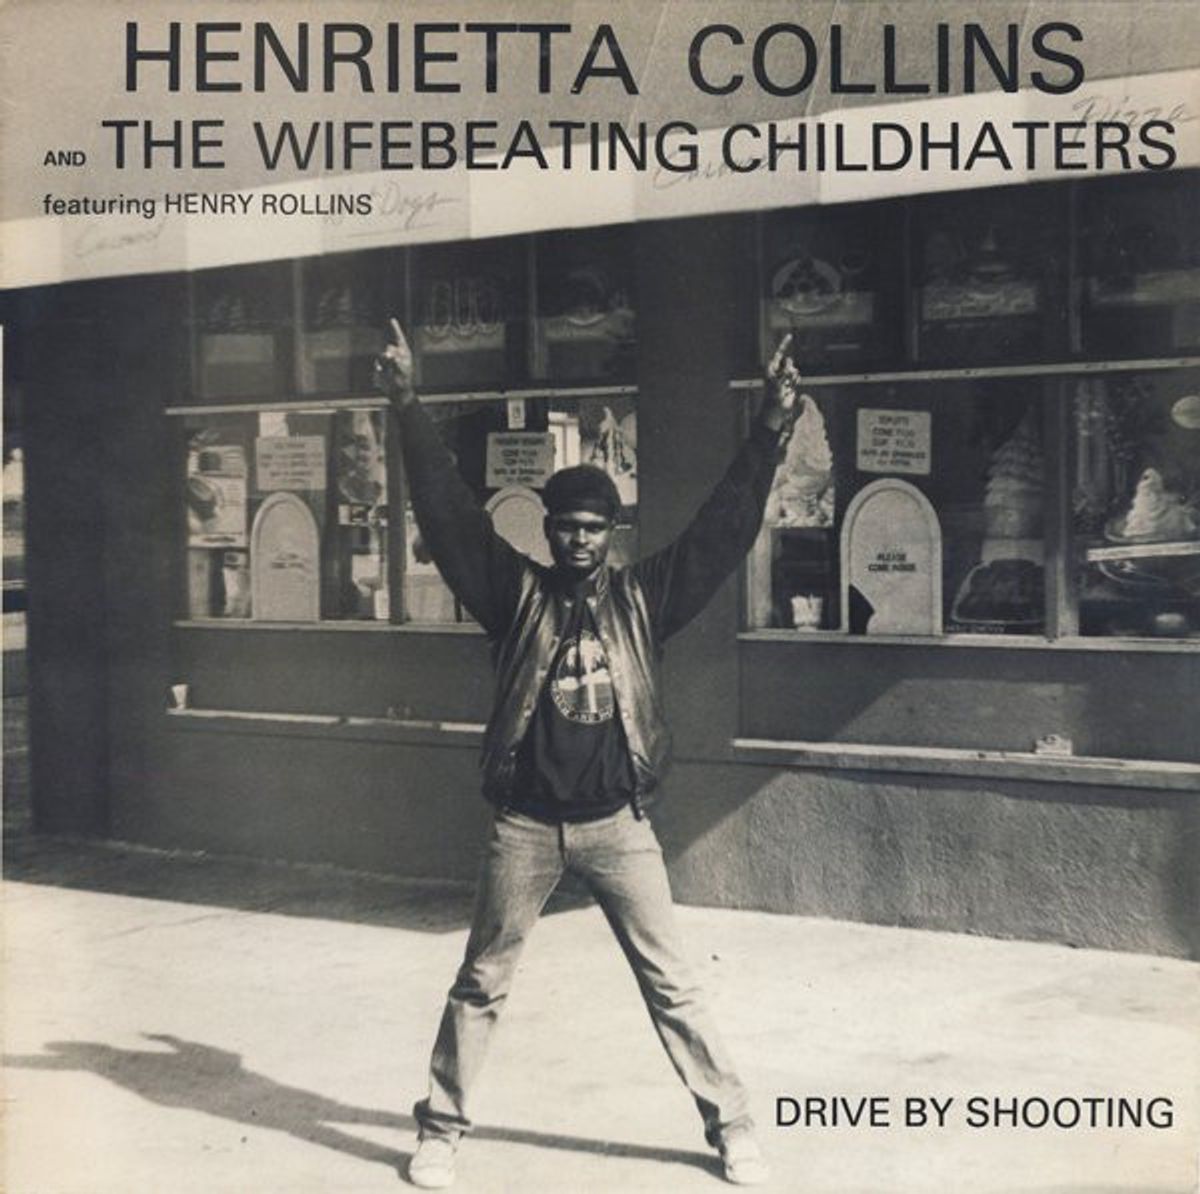 #TijdelijkeVerbanden - Henrietta Collins & The Wifebeating Childhaters